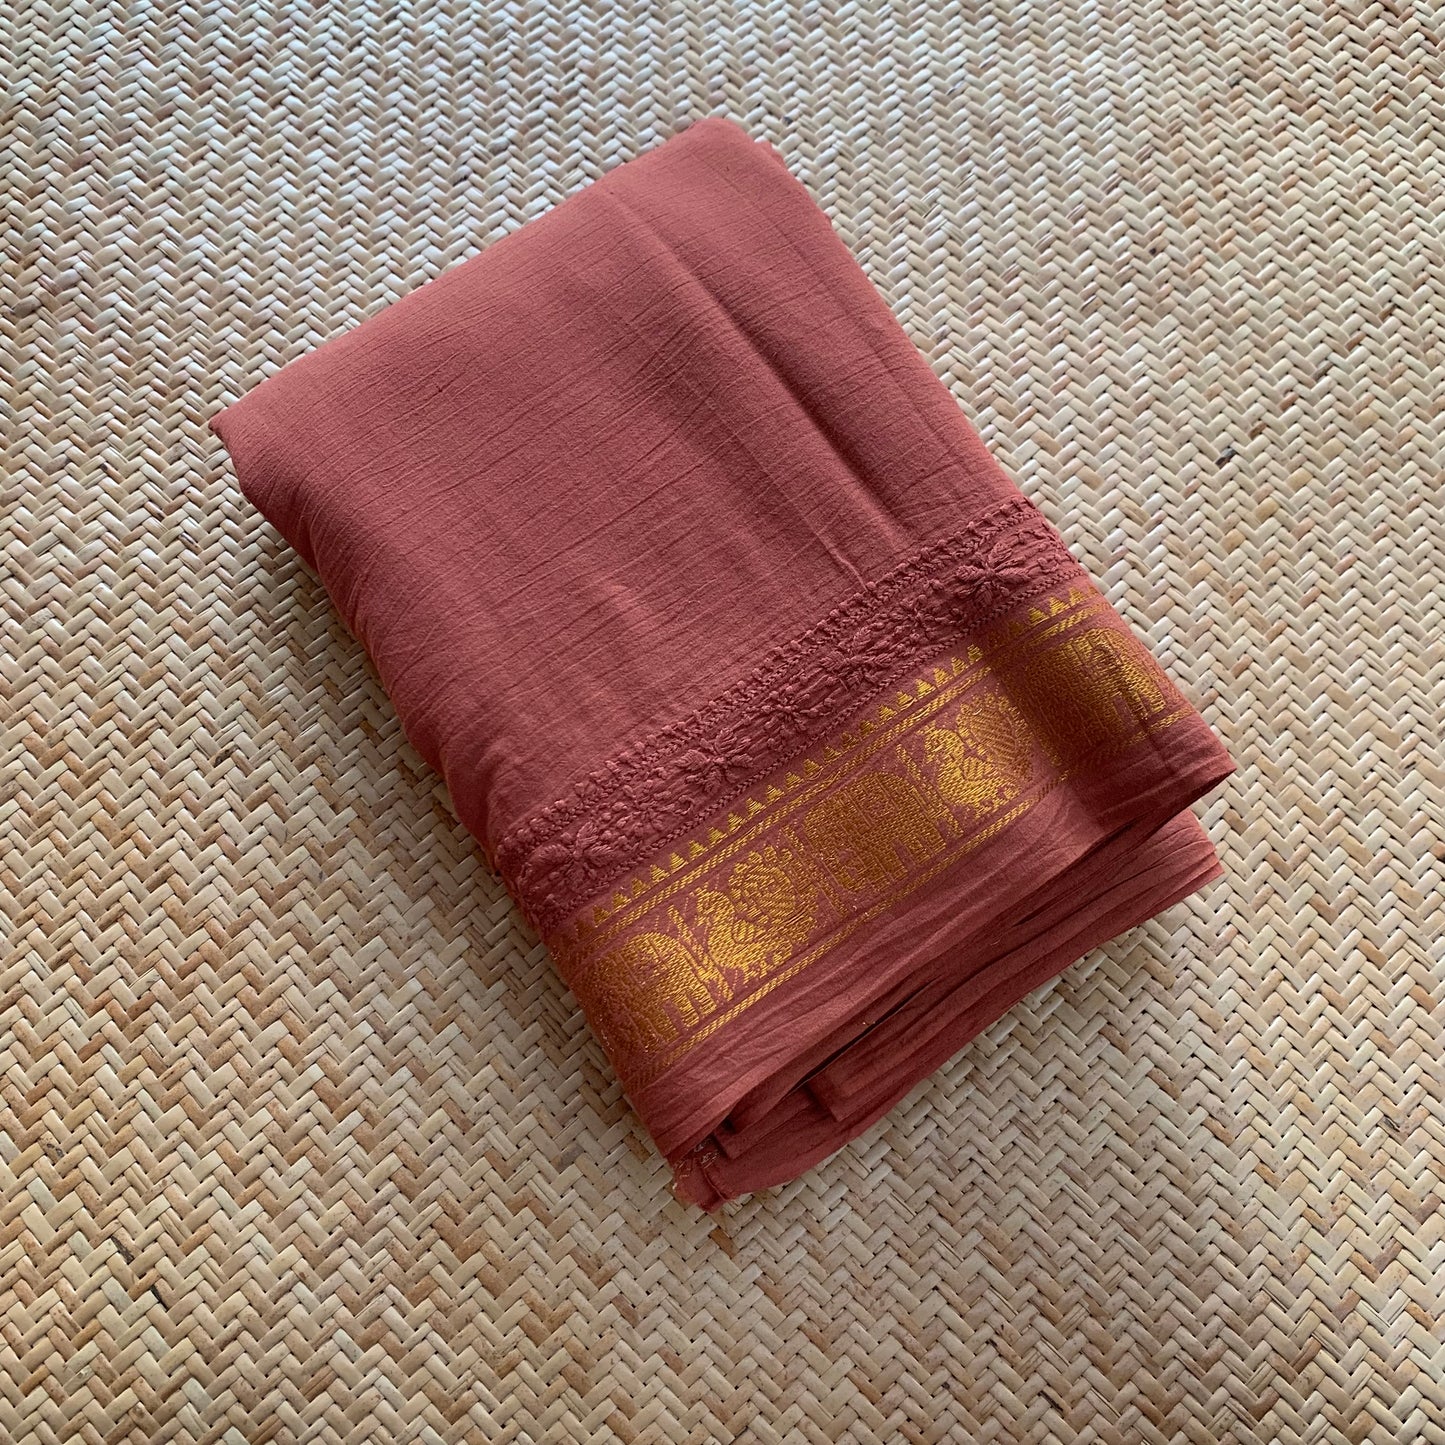 Brown Chickankari Hand Embroidery on a Sungudi Cotton Saree